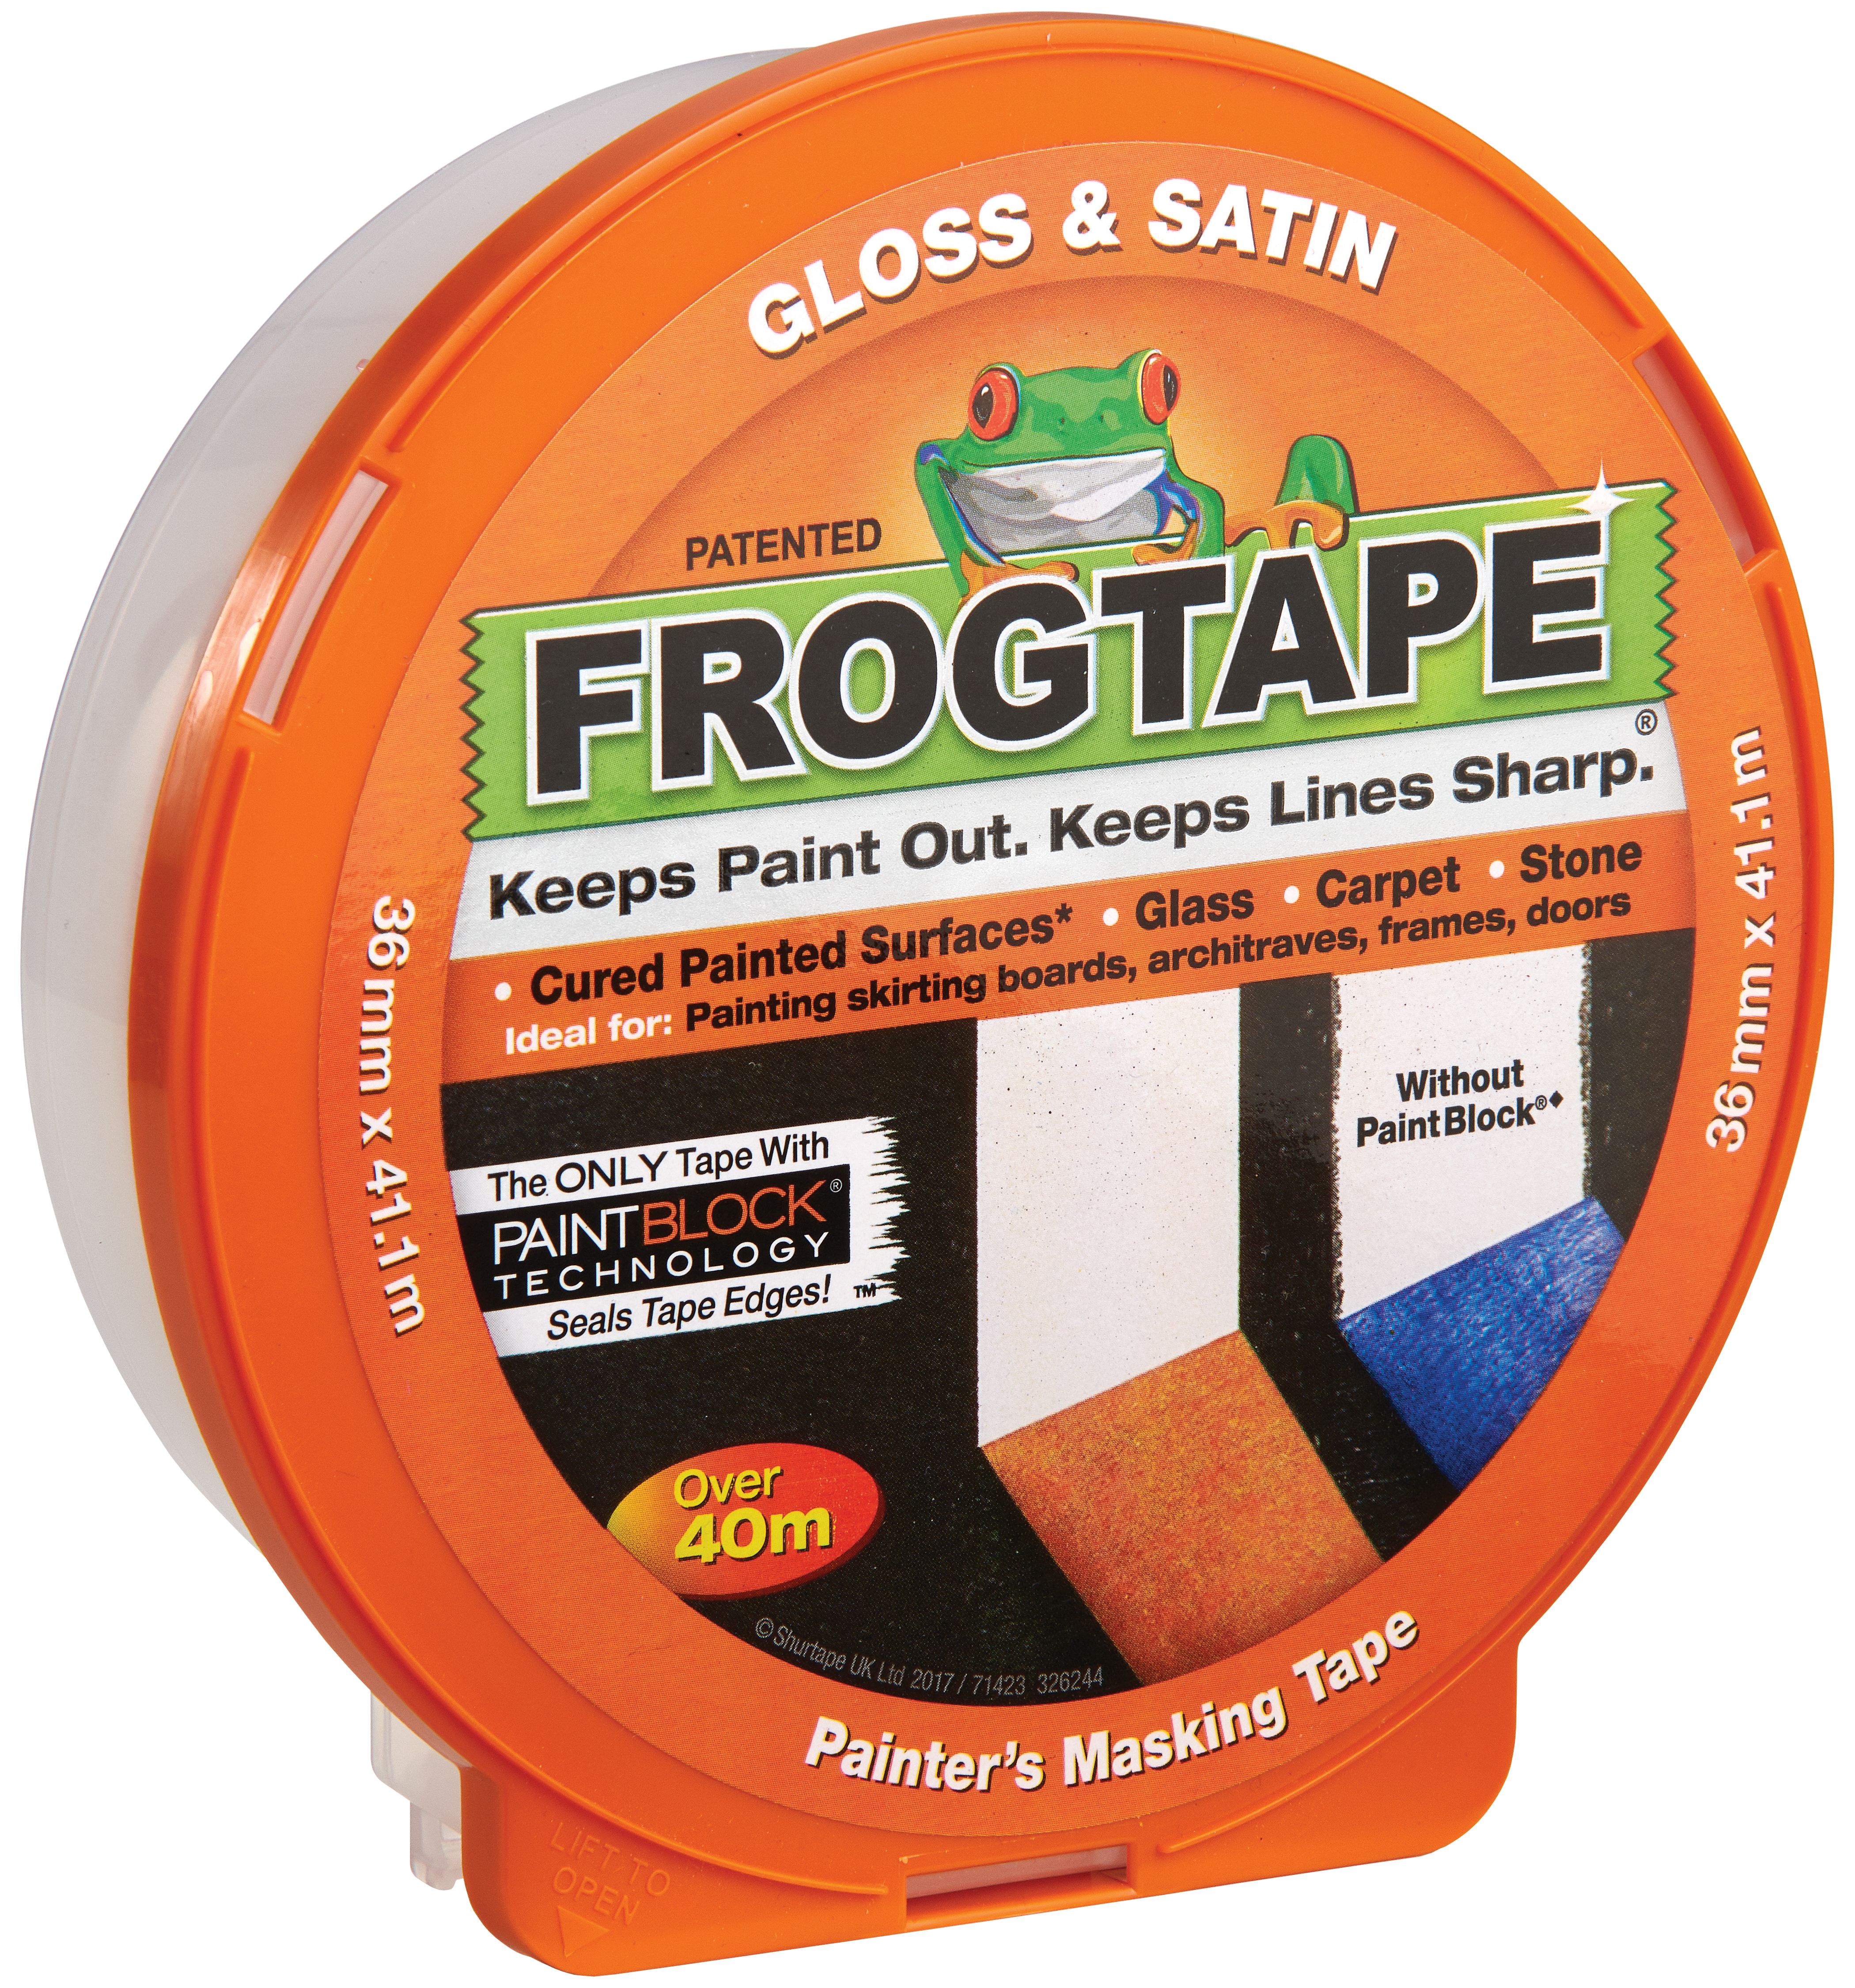 FrogTape Painter's Gloss & Satin Orange Masking Tape - 36mm x 41m